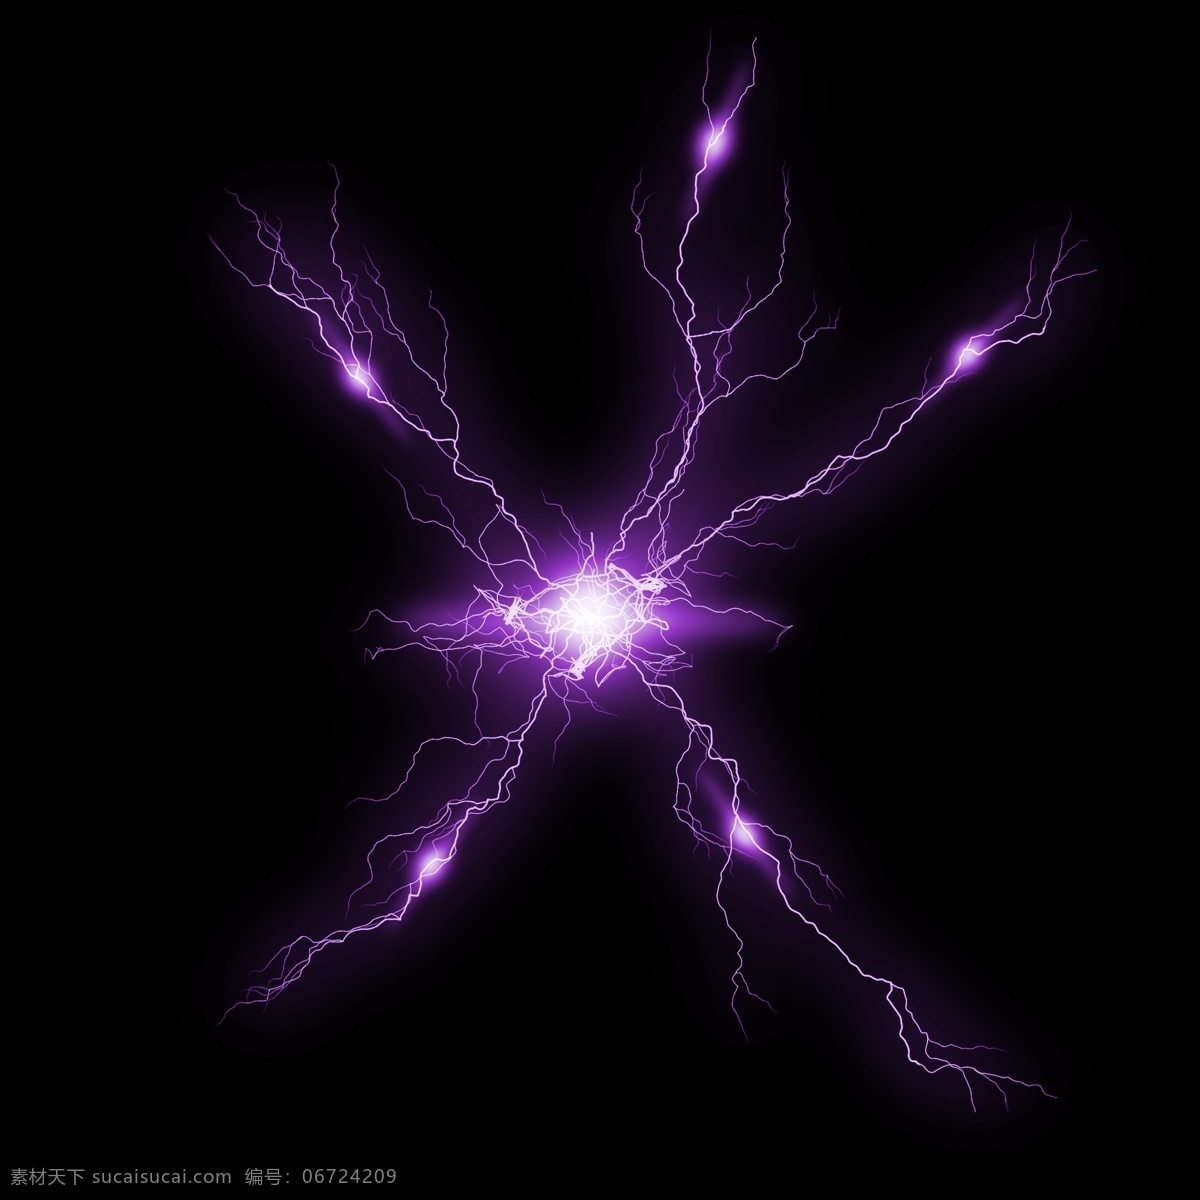 紫色 米 字形 闪电 效果 雷电光源 闪电光源 闪电效果 紫色闪电 雷电效果